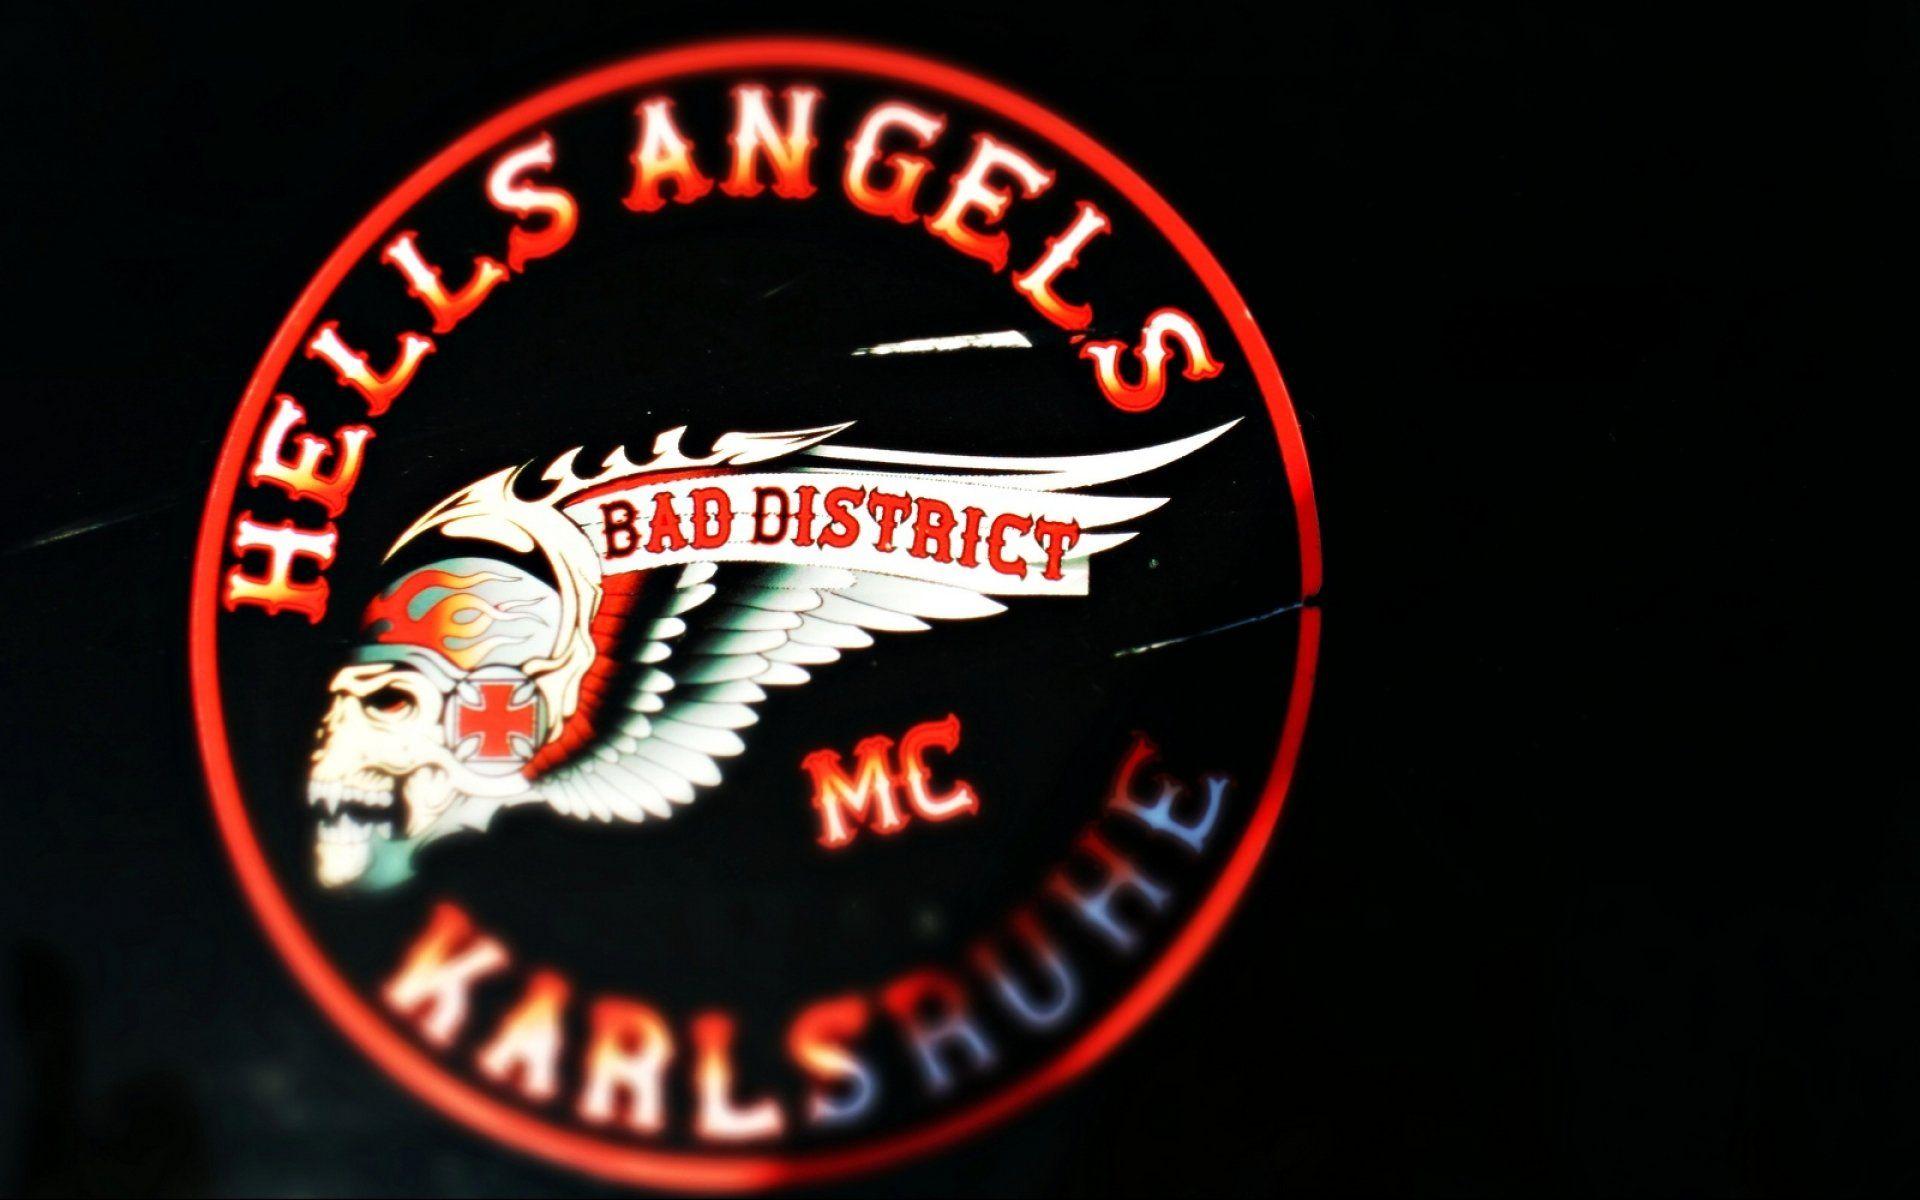 Hells Angels Hamc Biker Hells Angels Motorbike Motorcycle Bike